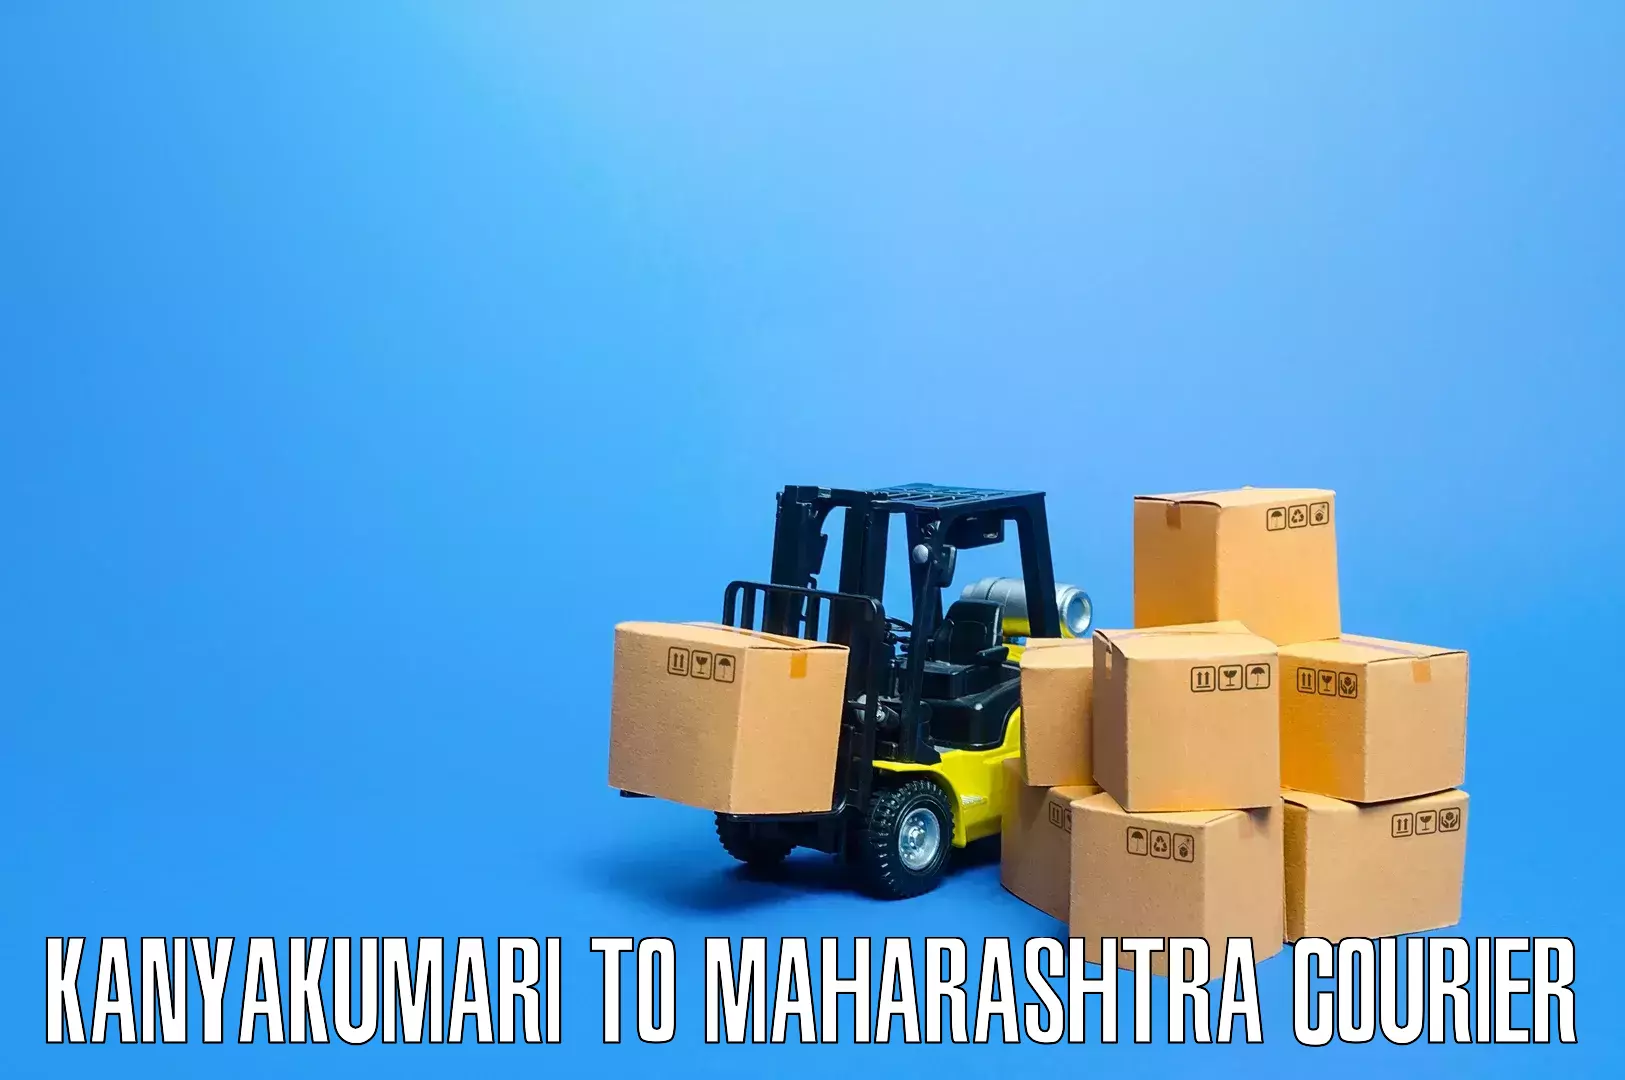 Home moving specialists Kanyakumari to Maharashtra